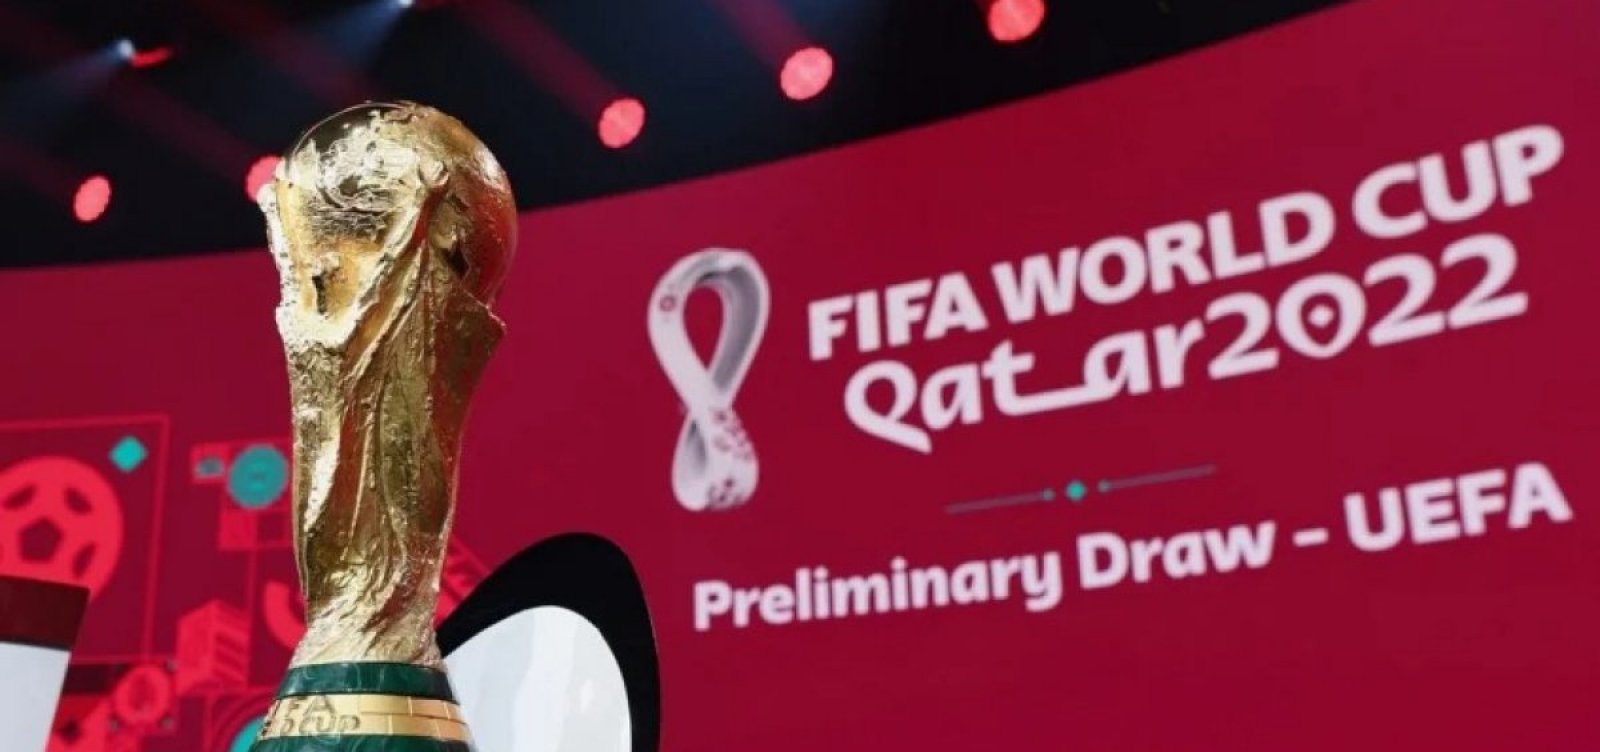 Quem vai sediar a Copa do Mundo de 2026?